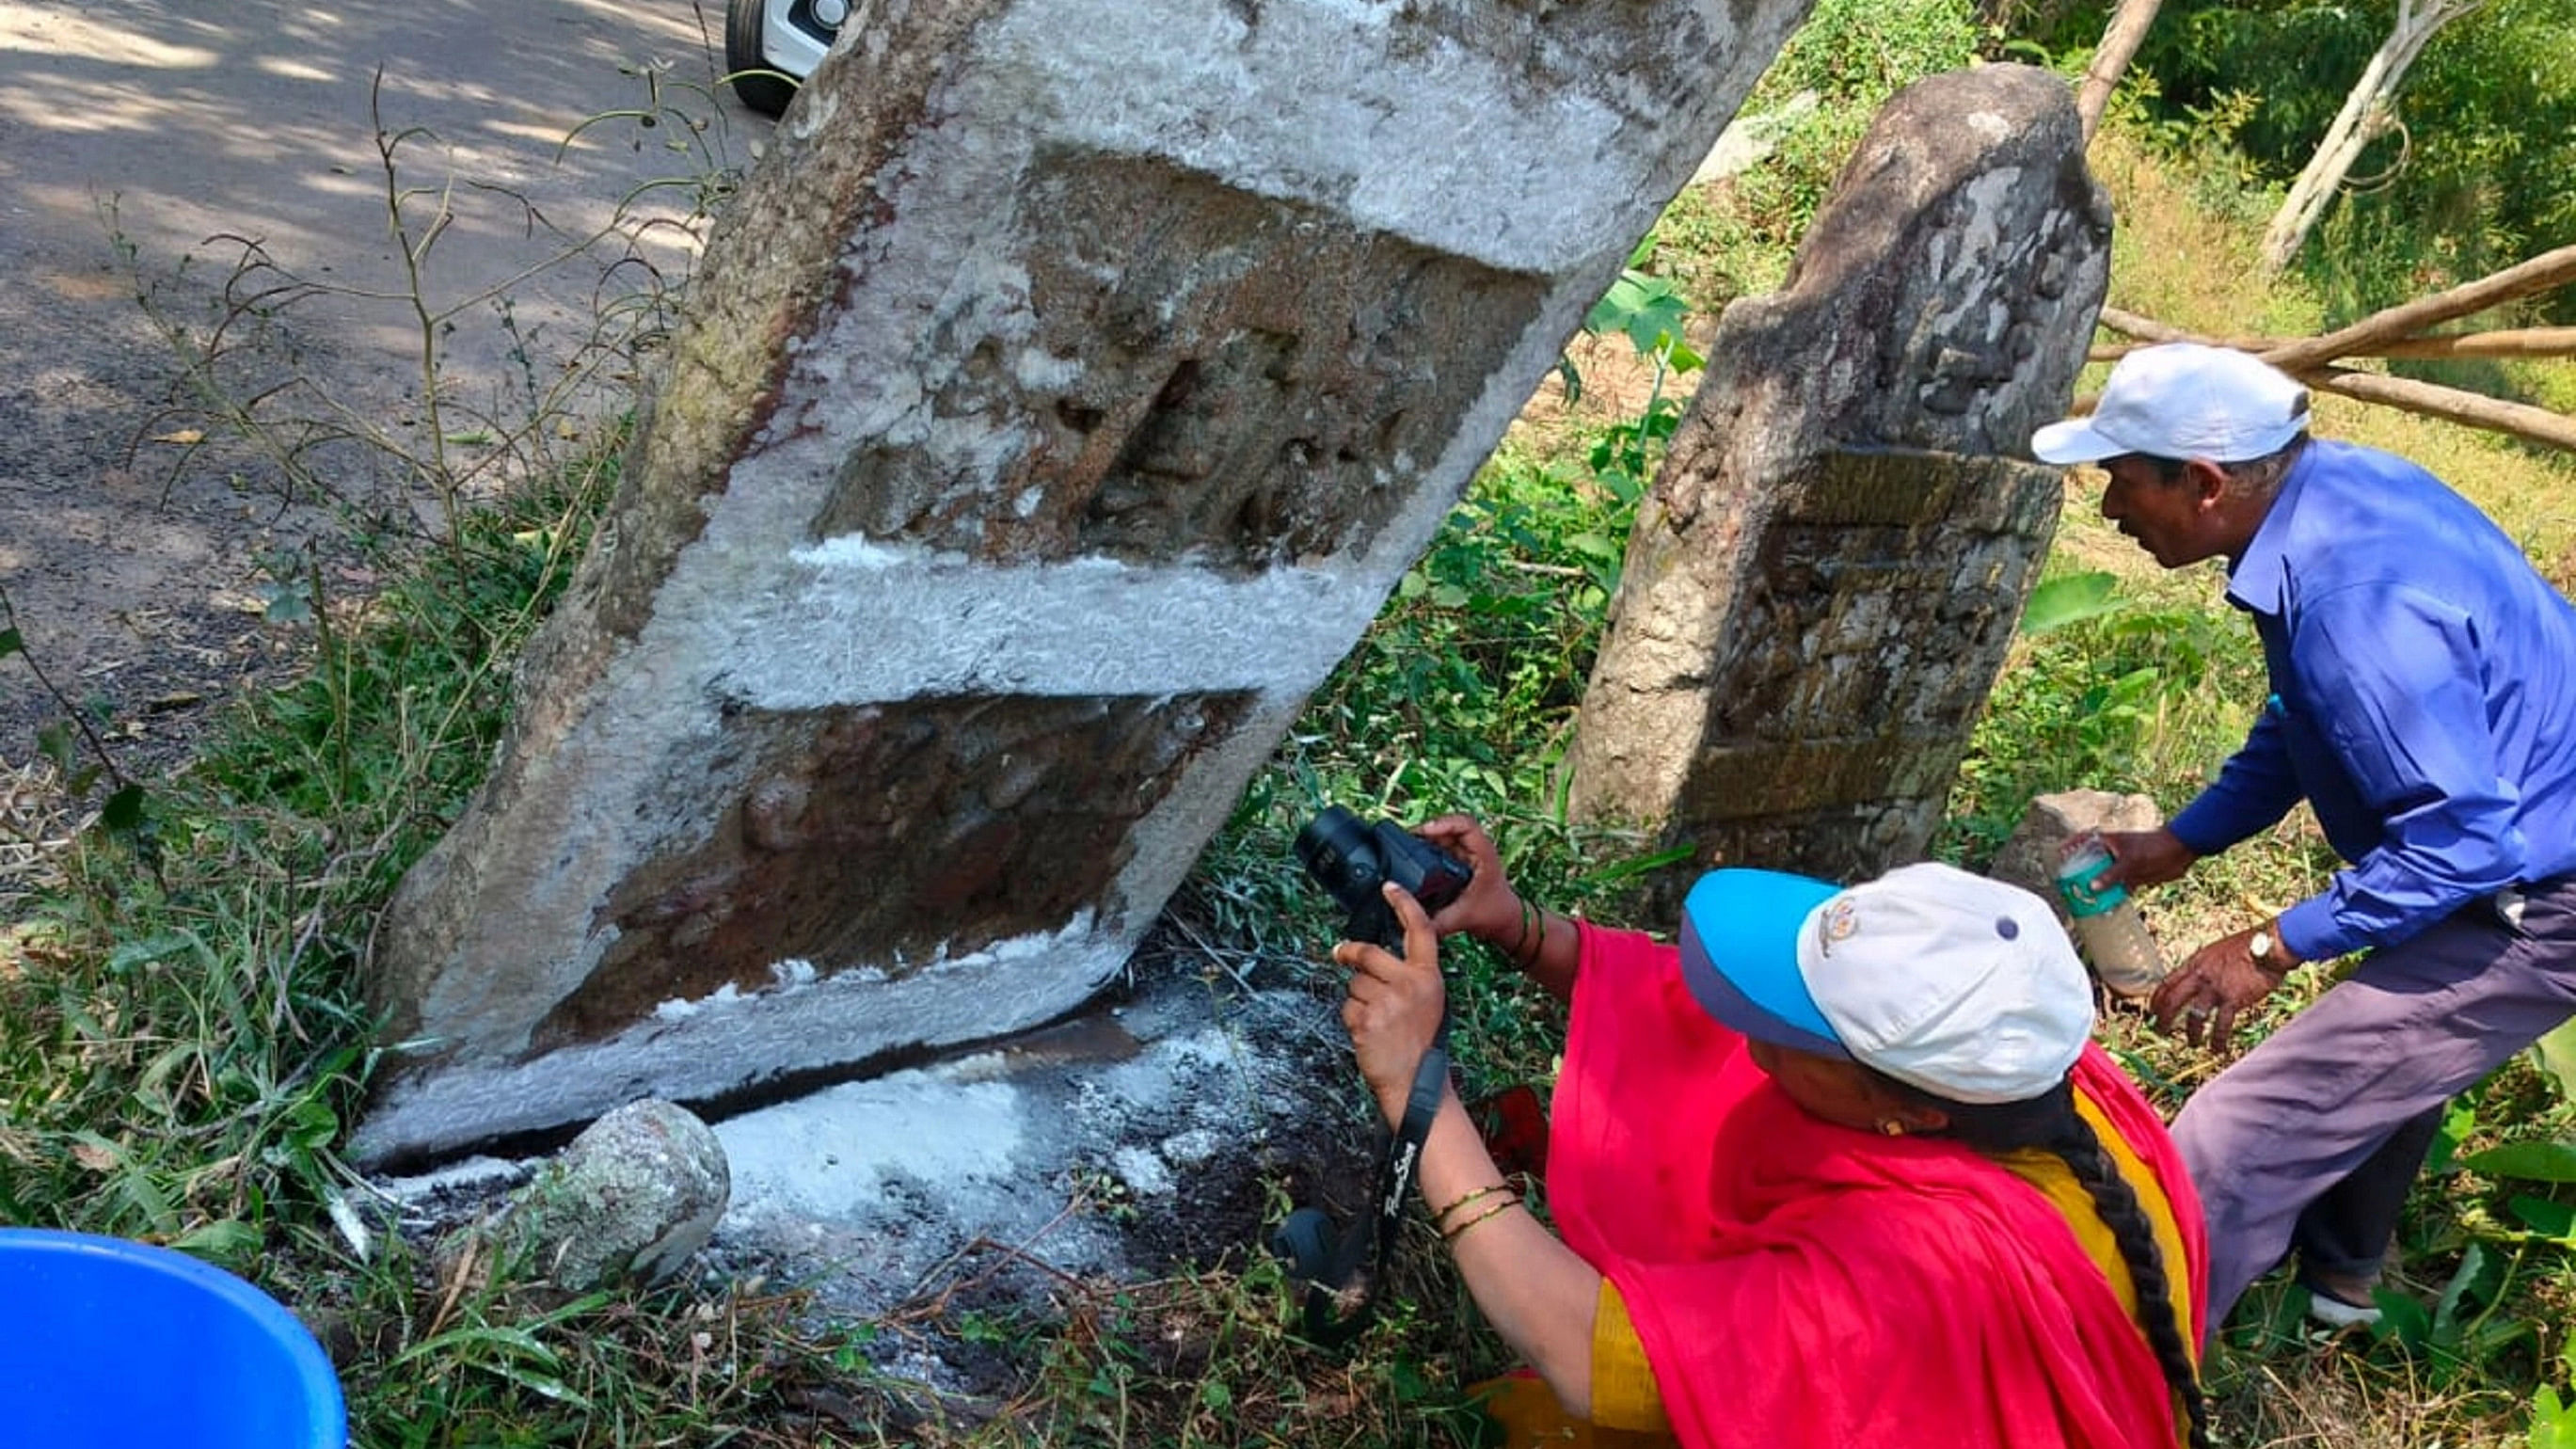 ಶಾಸನದ ಪರಿಶೀಲನೆಯಲ್ಲಿರುವ ಕ್ಯೂರೇಟರ್ ರೇಖಾ